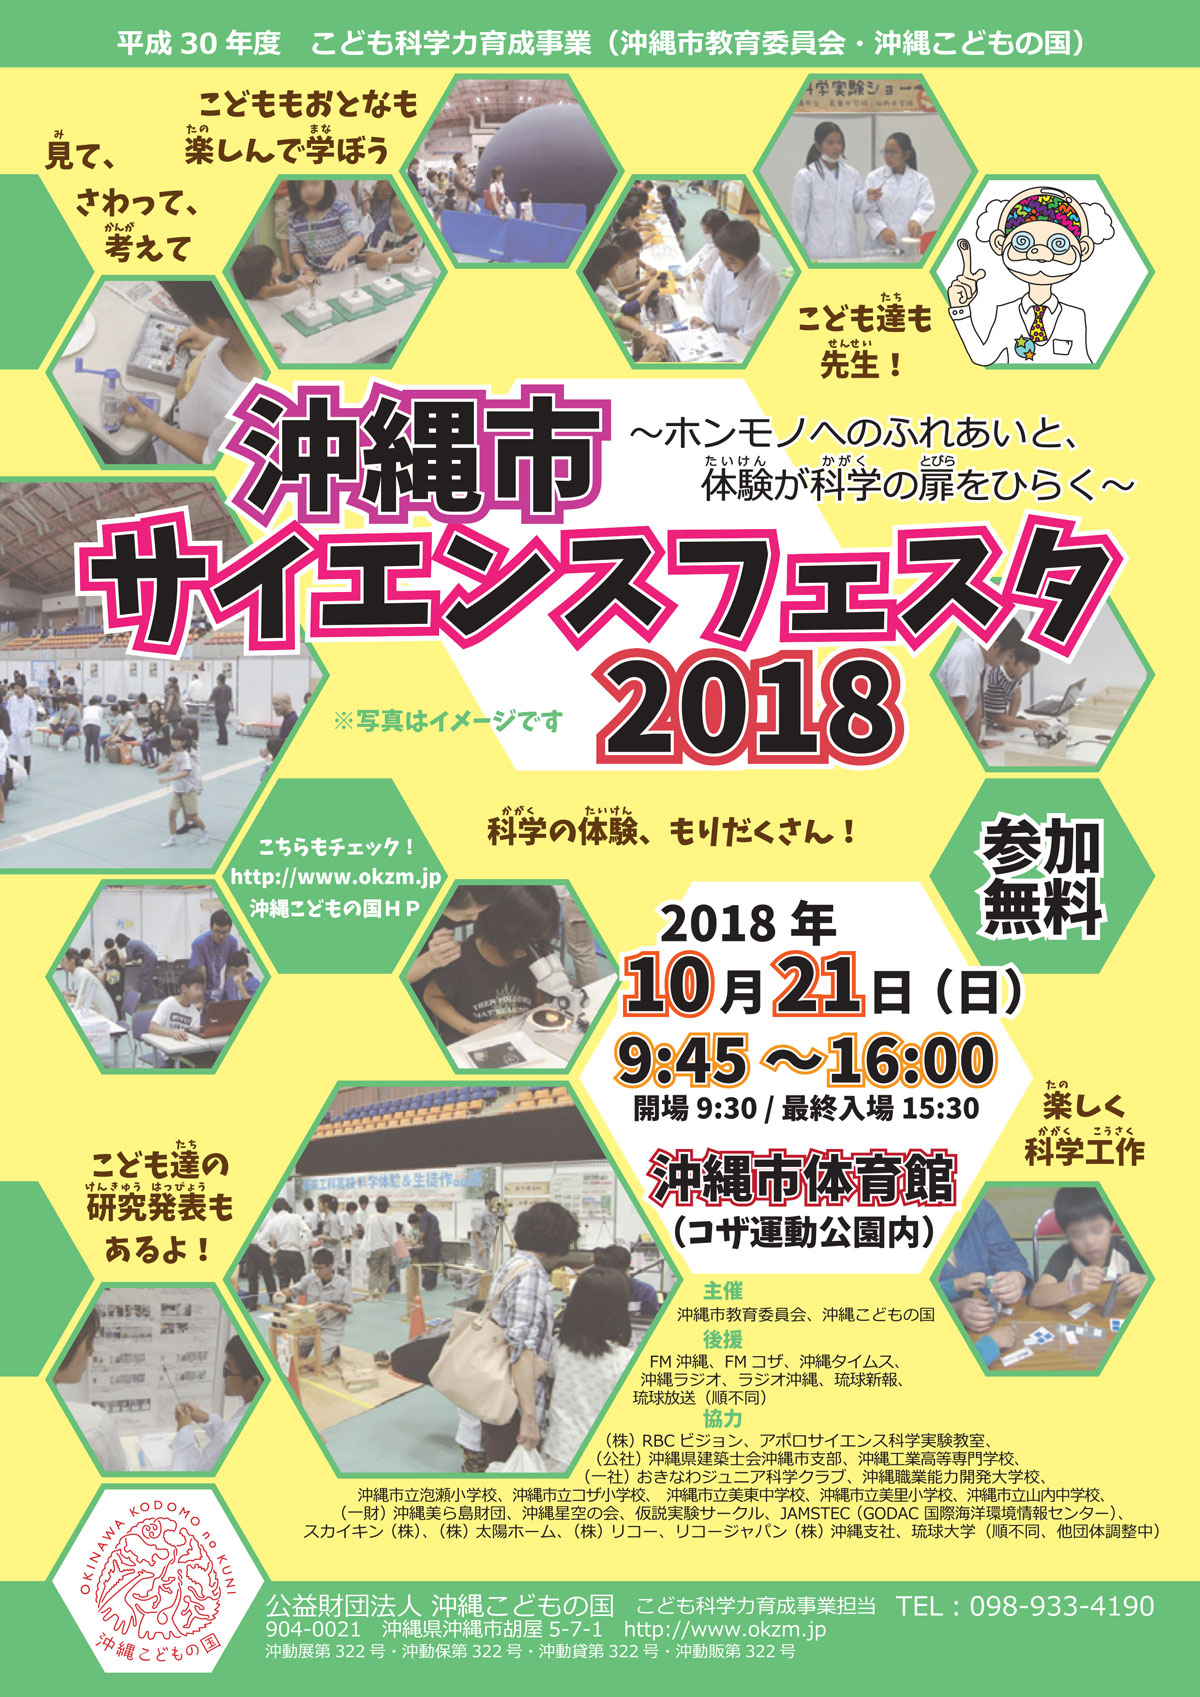 【沖縄市で開催】サイエンスフェスタ2018に出展します！